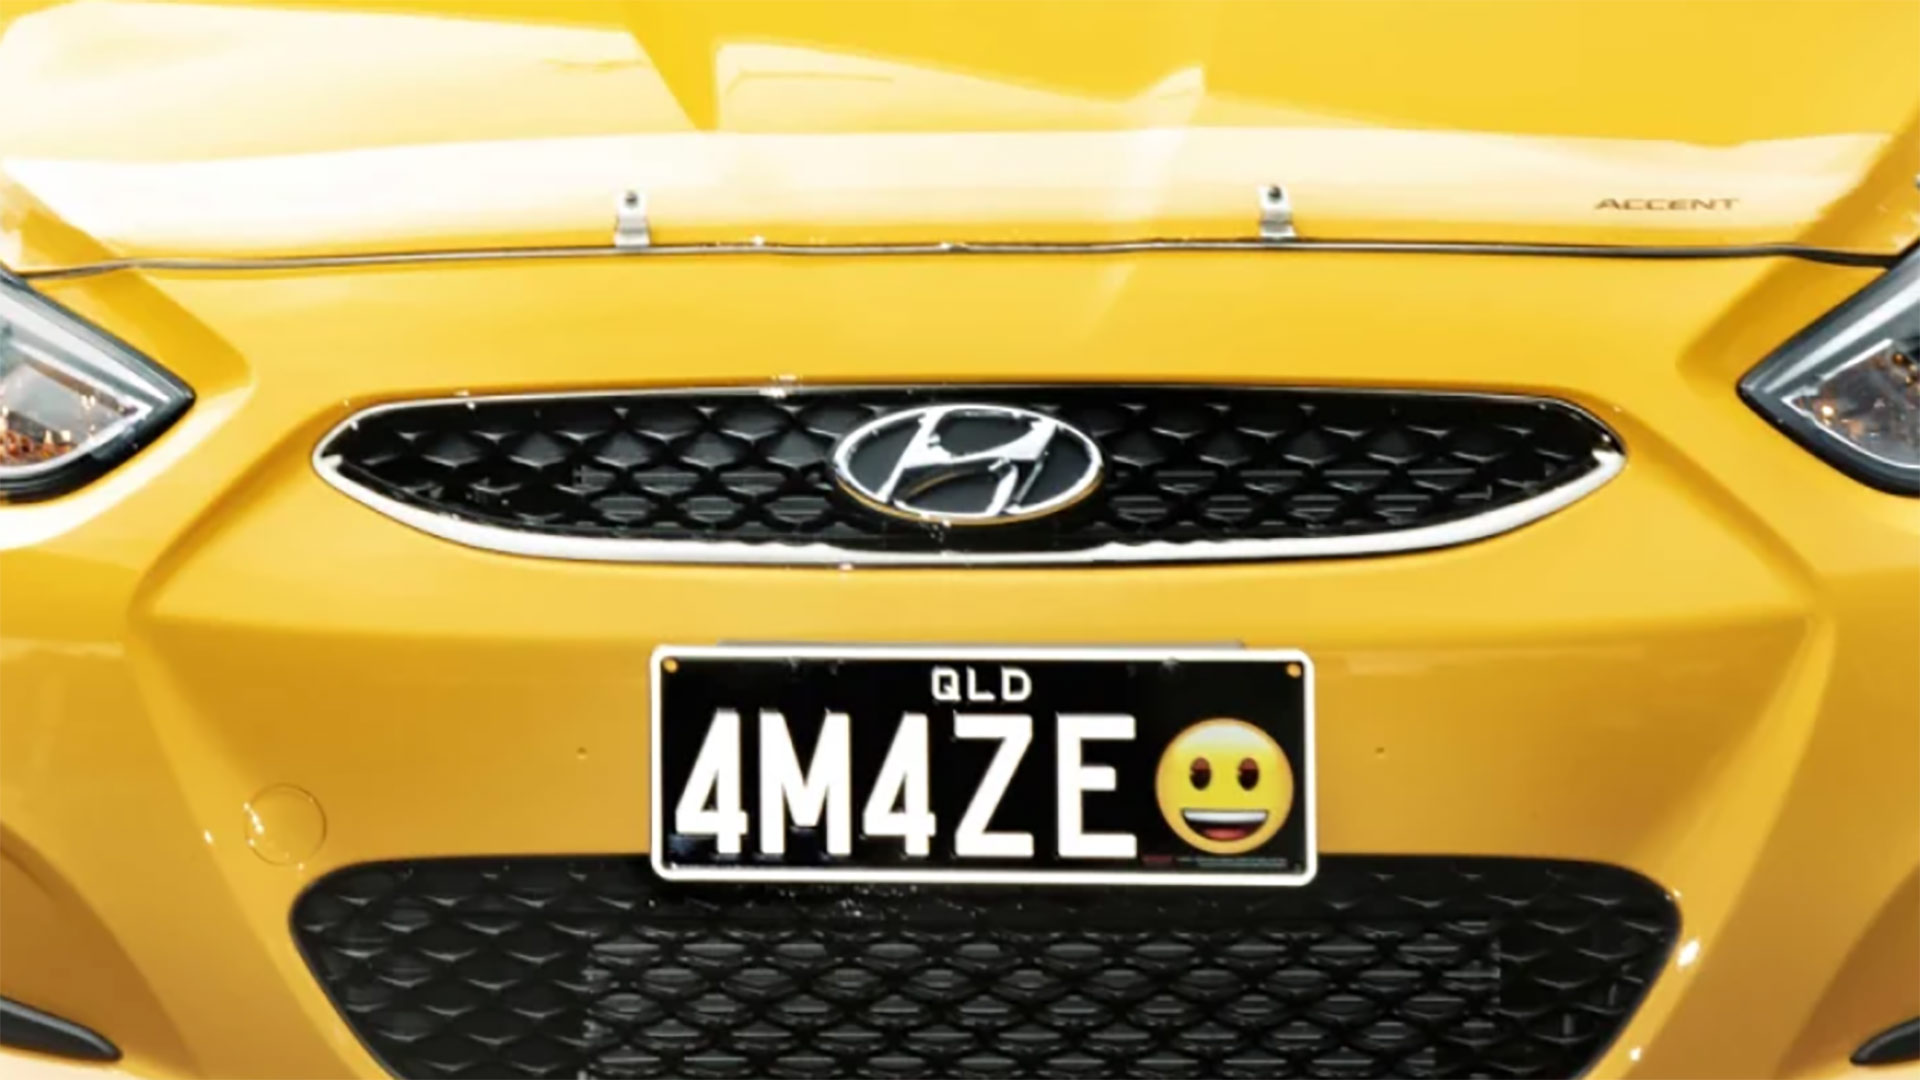 ¿Qué emoticono le pondrías a la matrícula de tu coche? En Australia ya se pueden personalizar